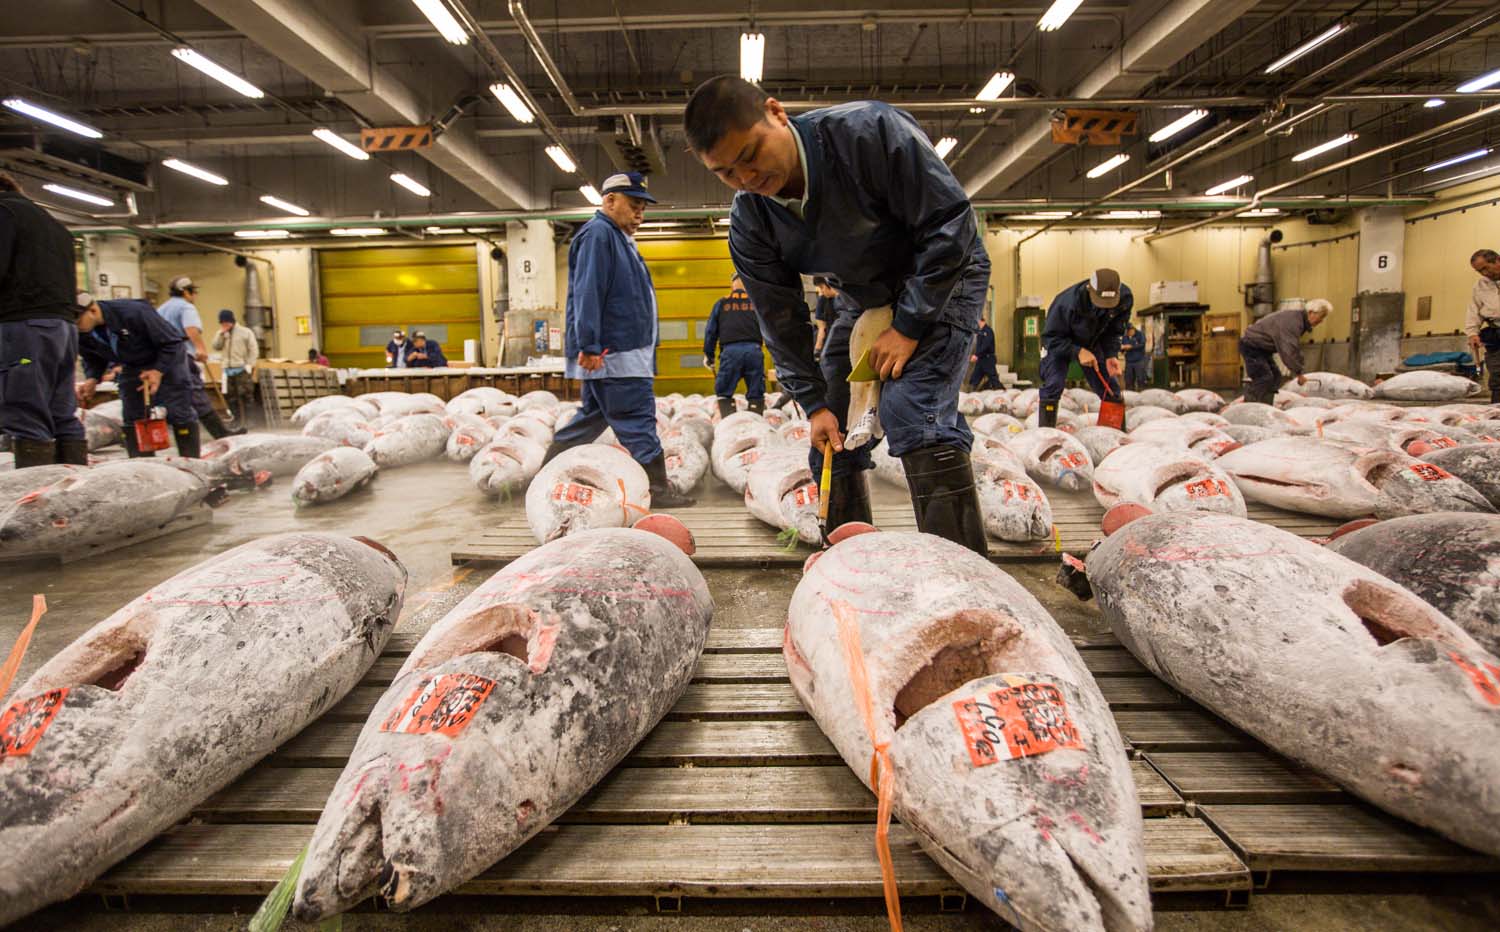 Tokyo lo mai một văn hóa truyền thống khi di dời chợ cá